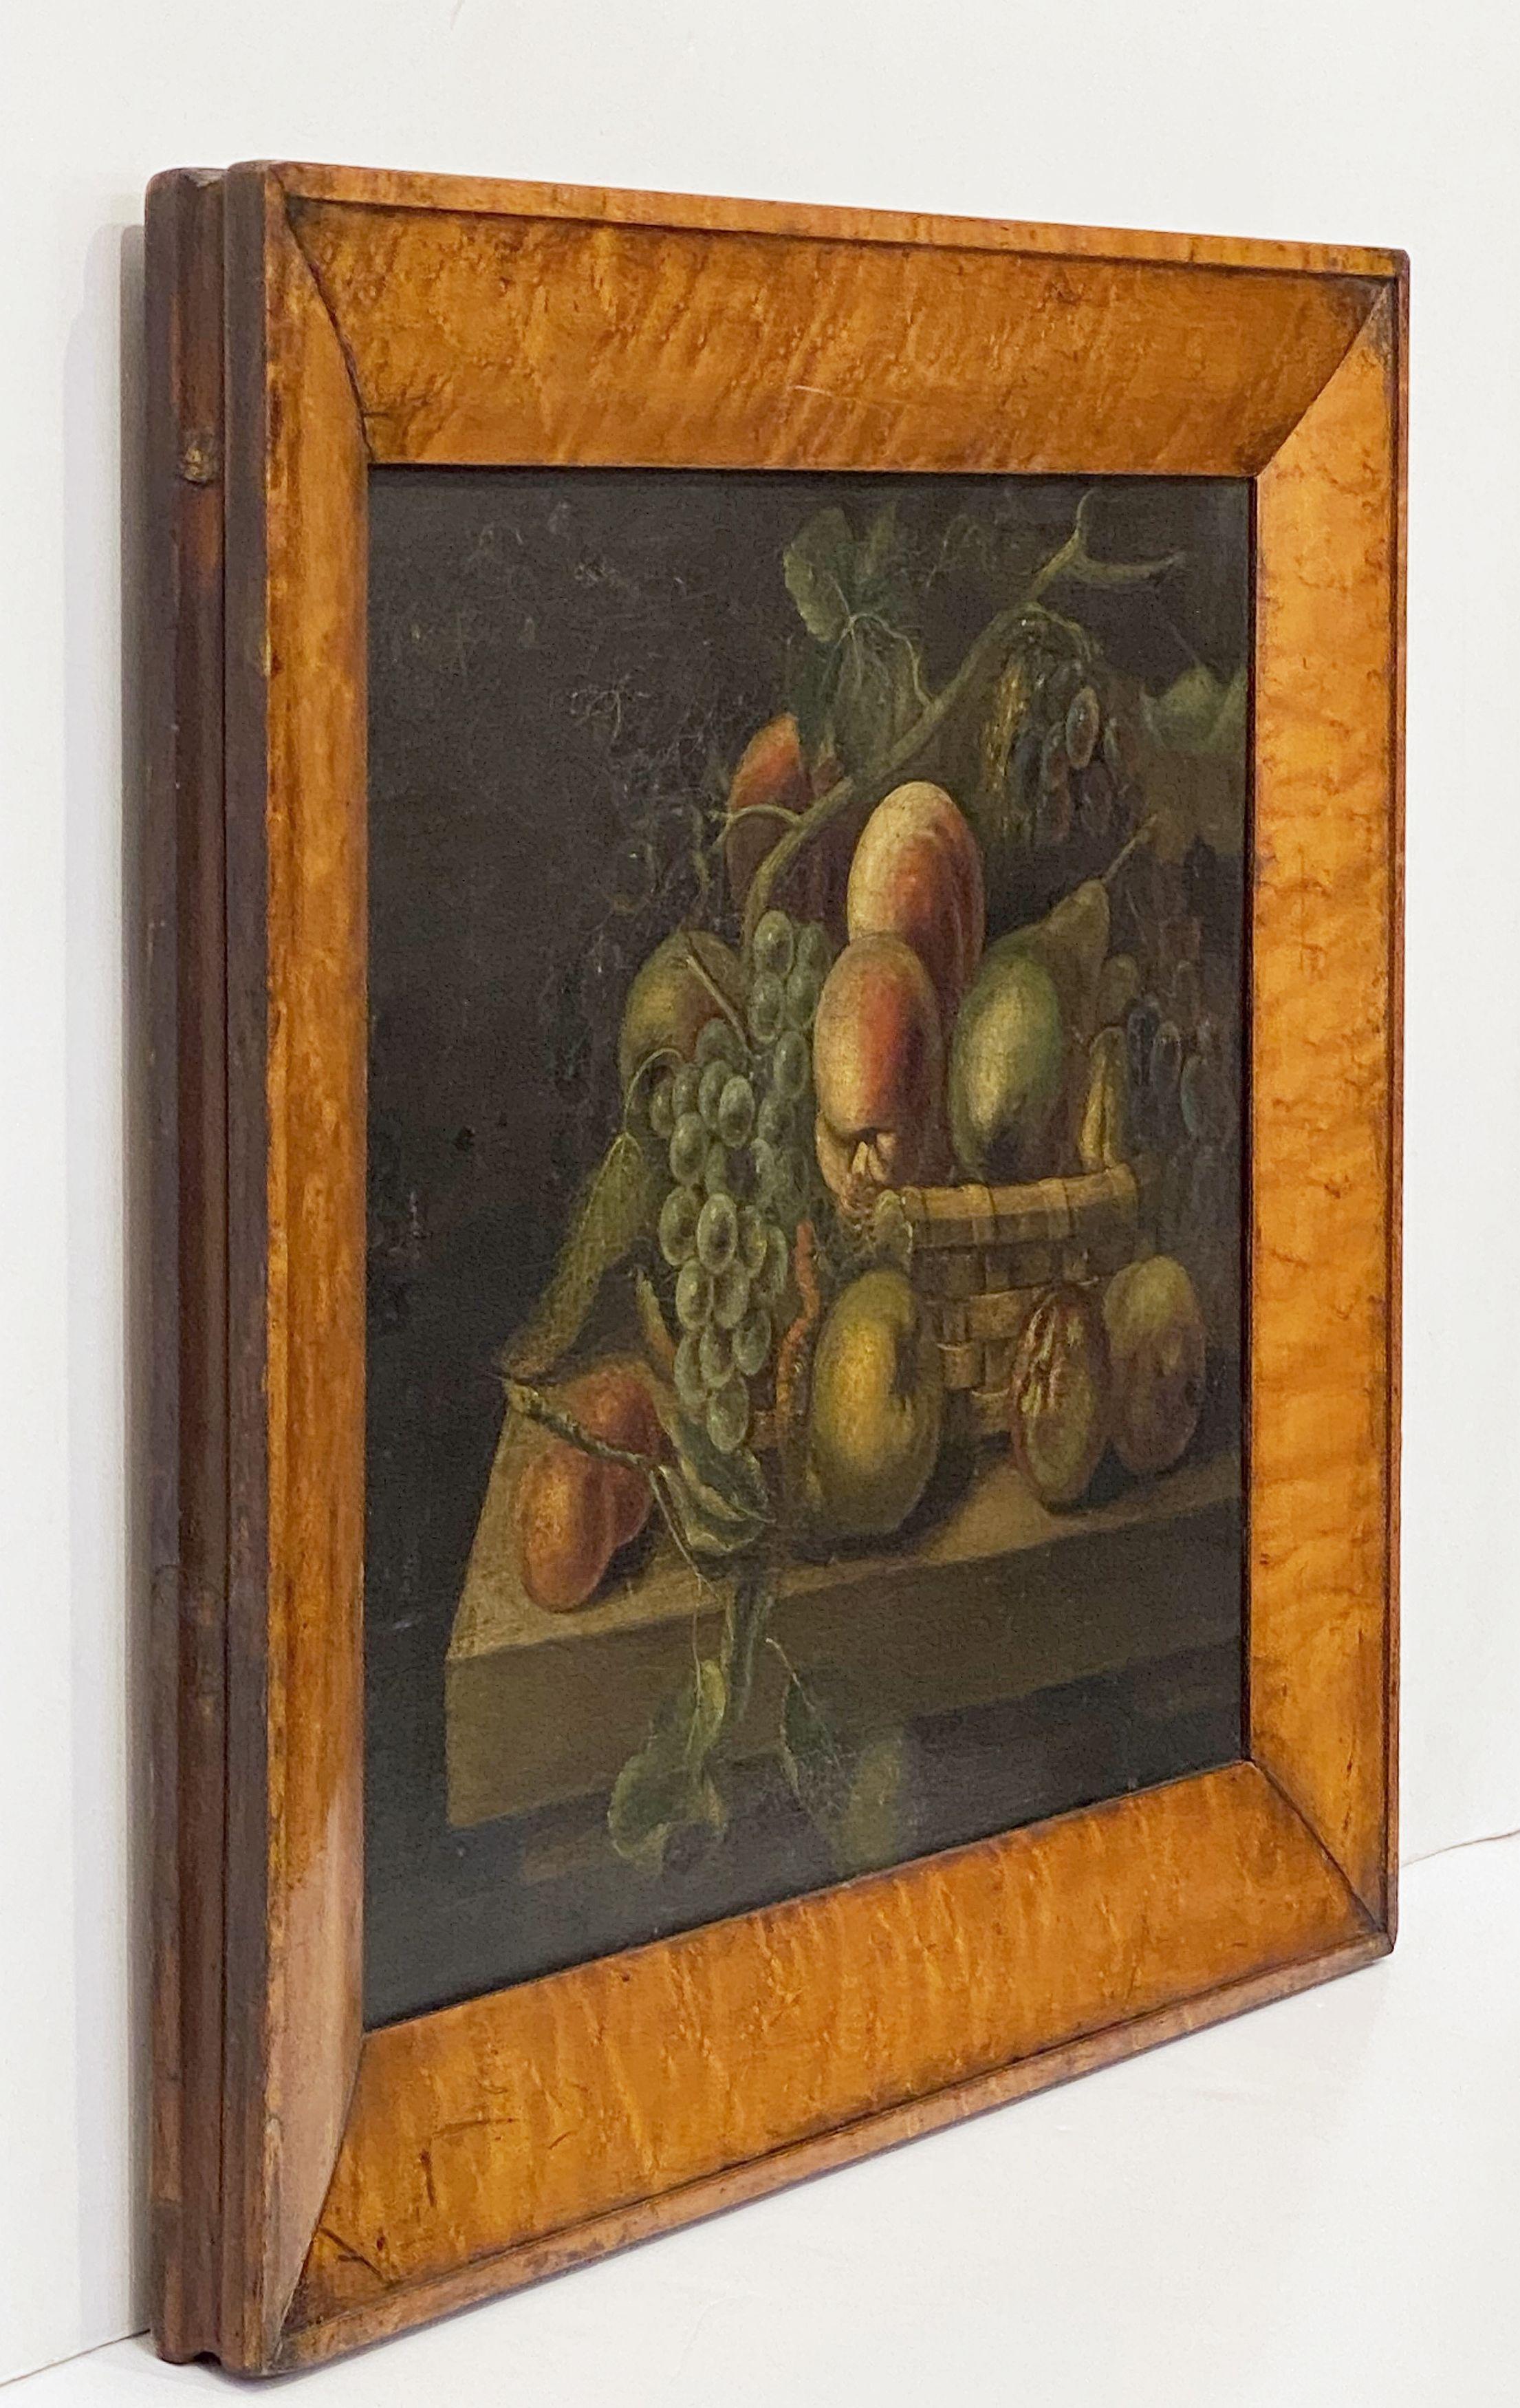 Une belle peinture à l'huile anglaise du 19ème siècle dans un cadre en érable magnifiquement patiné, présentant une nature morte de pommes, poires, pêches et raisins disposés dans un panier en osier. La peinture est réalisée sur toile, puis montée